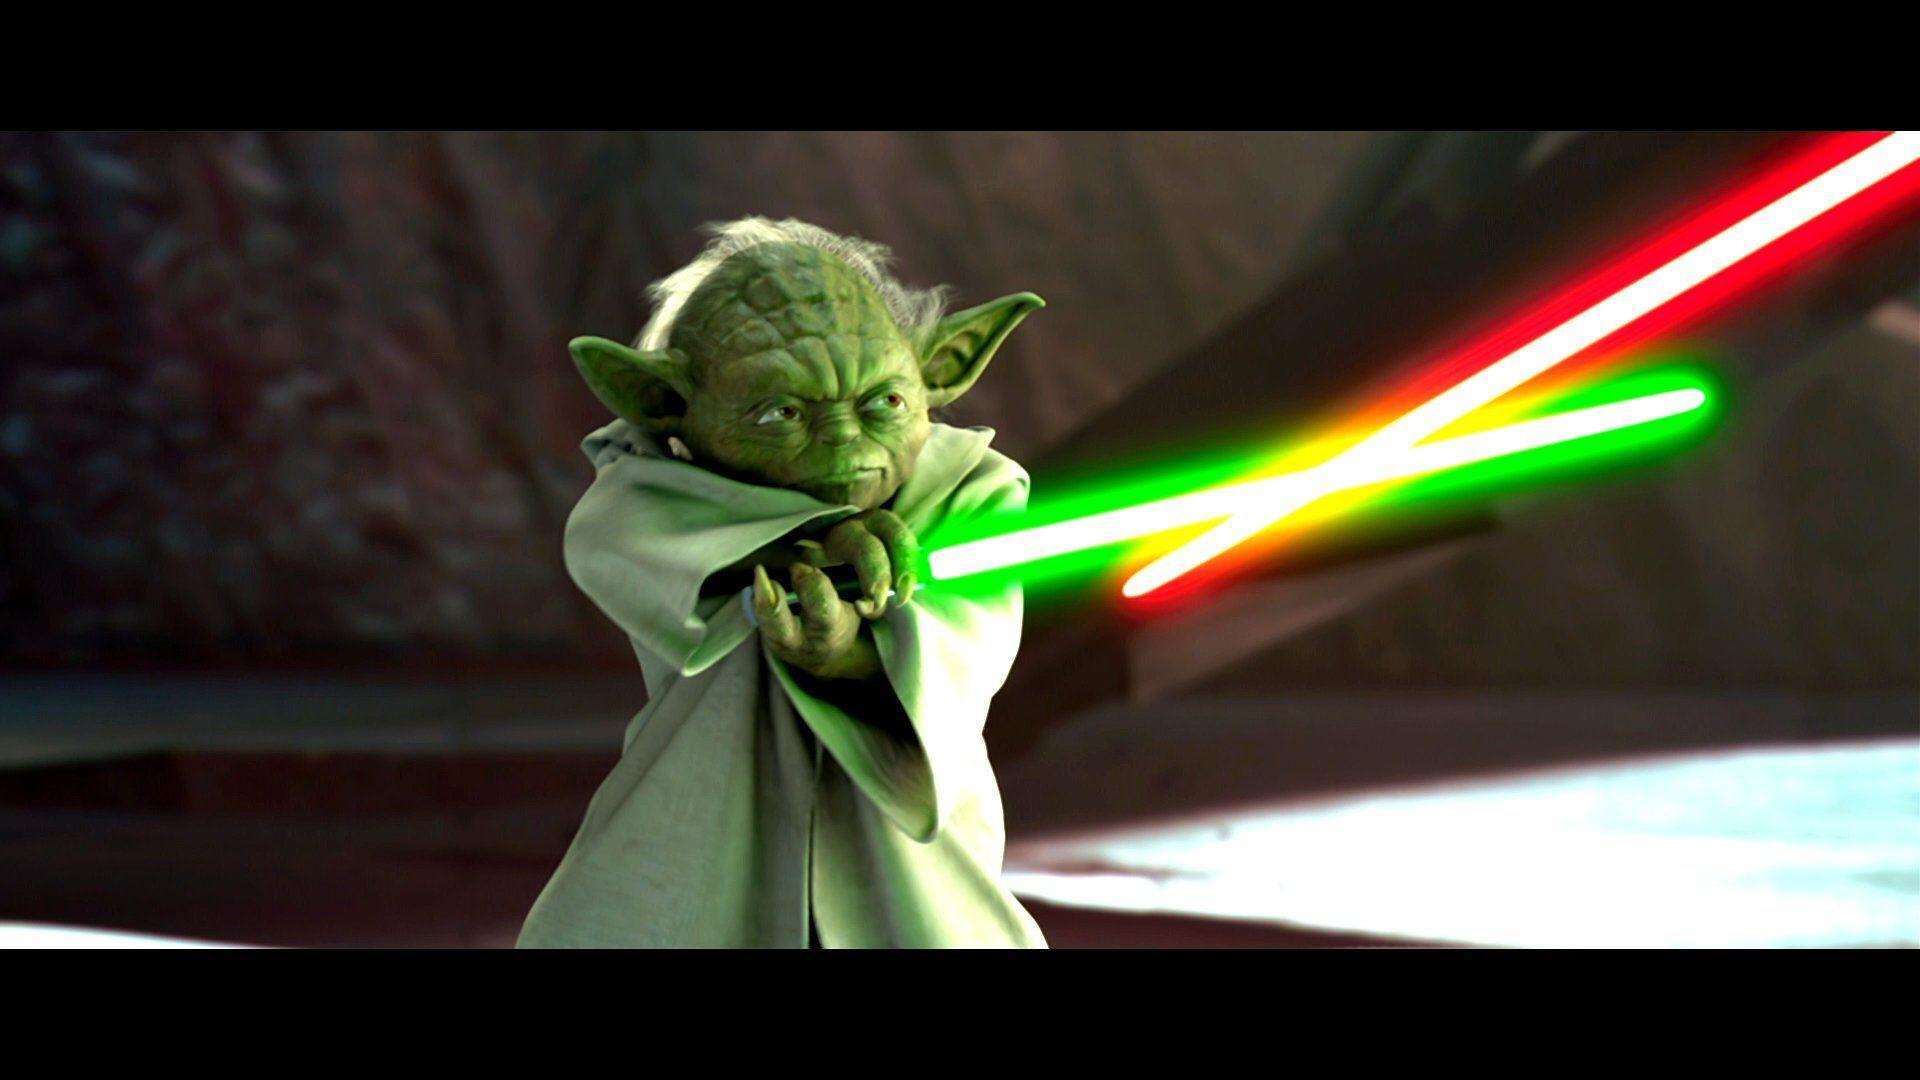 Amazing HD Widescreen Wallpaper of Yoda, Full HD 1080p